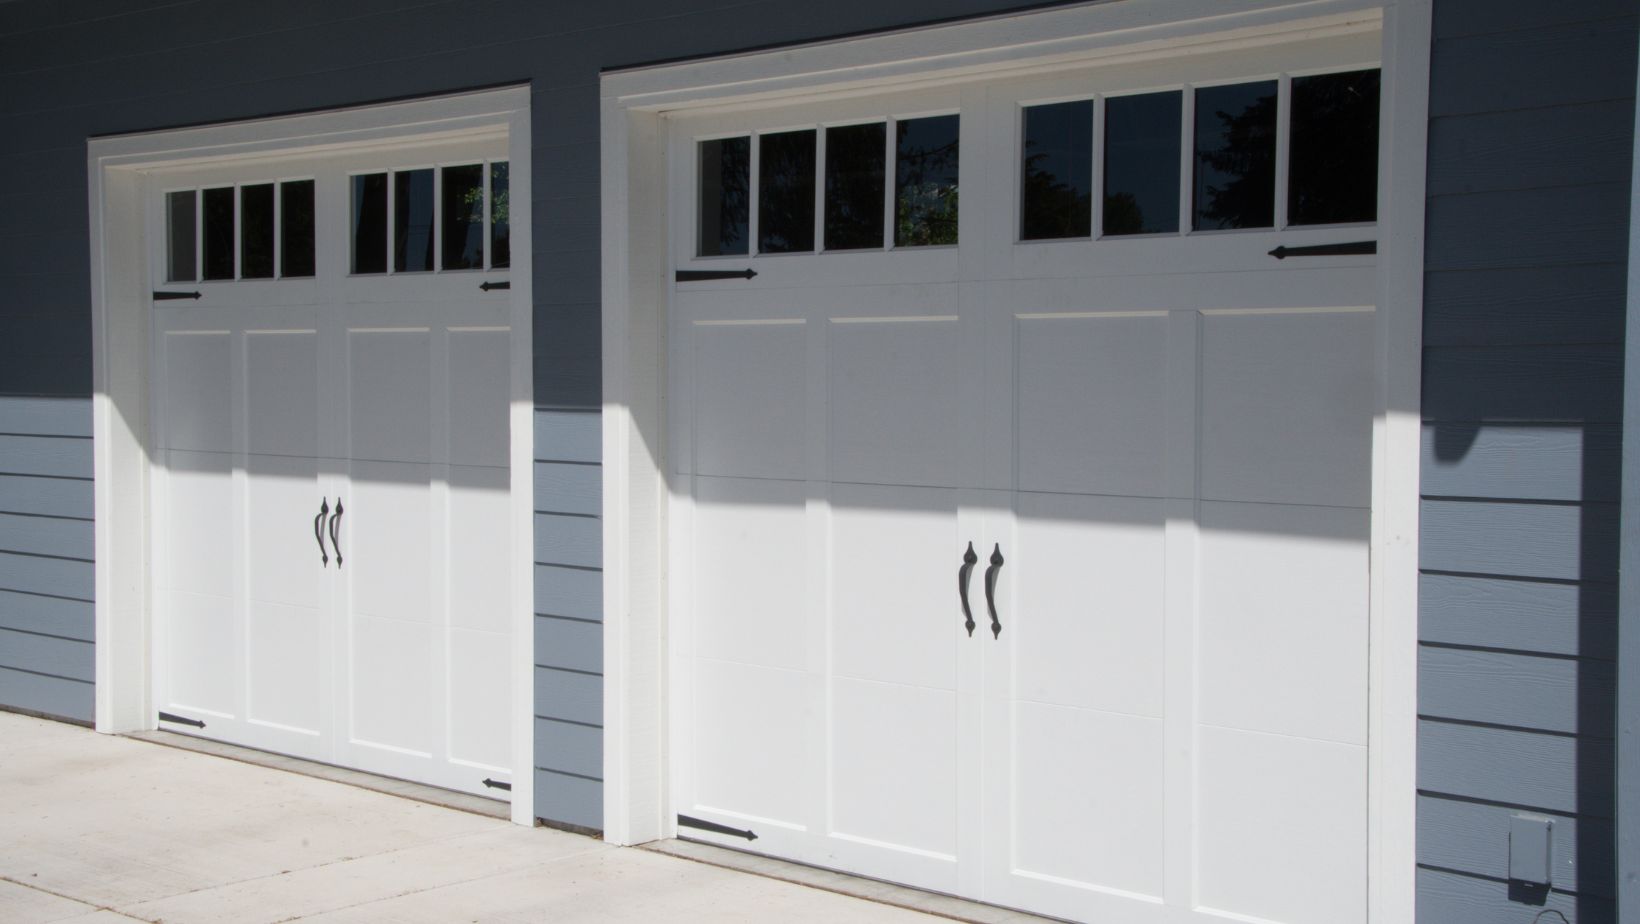 9x7 garage door for sale